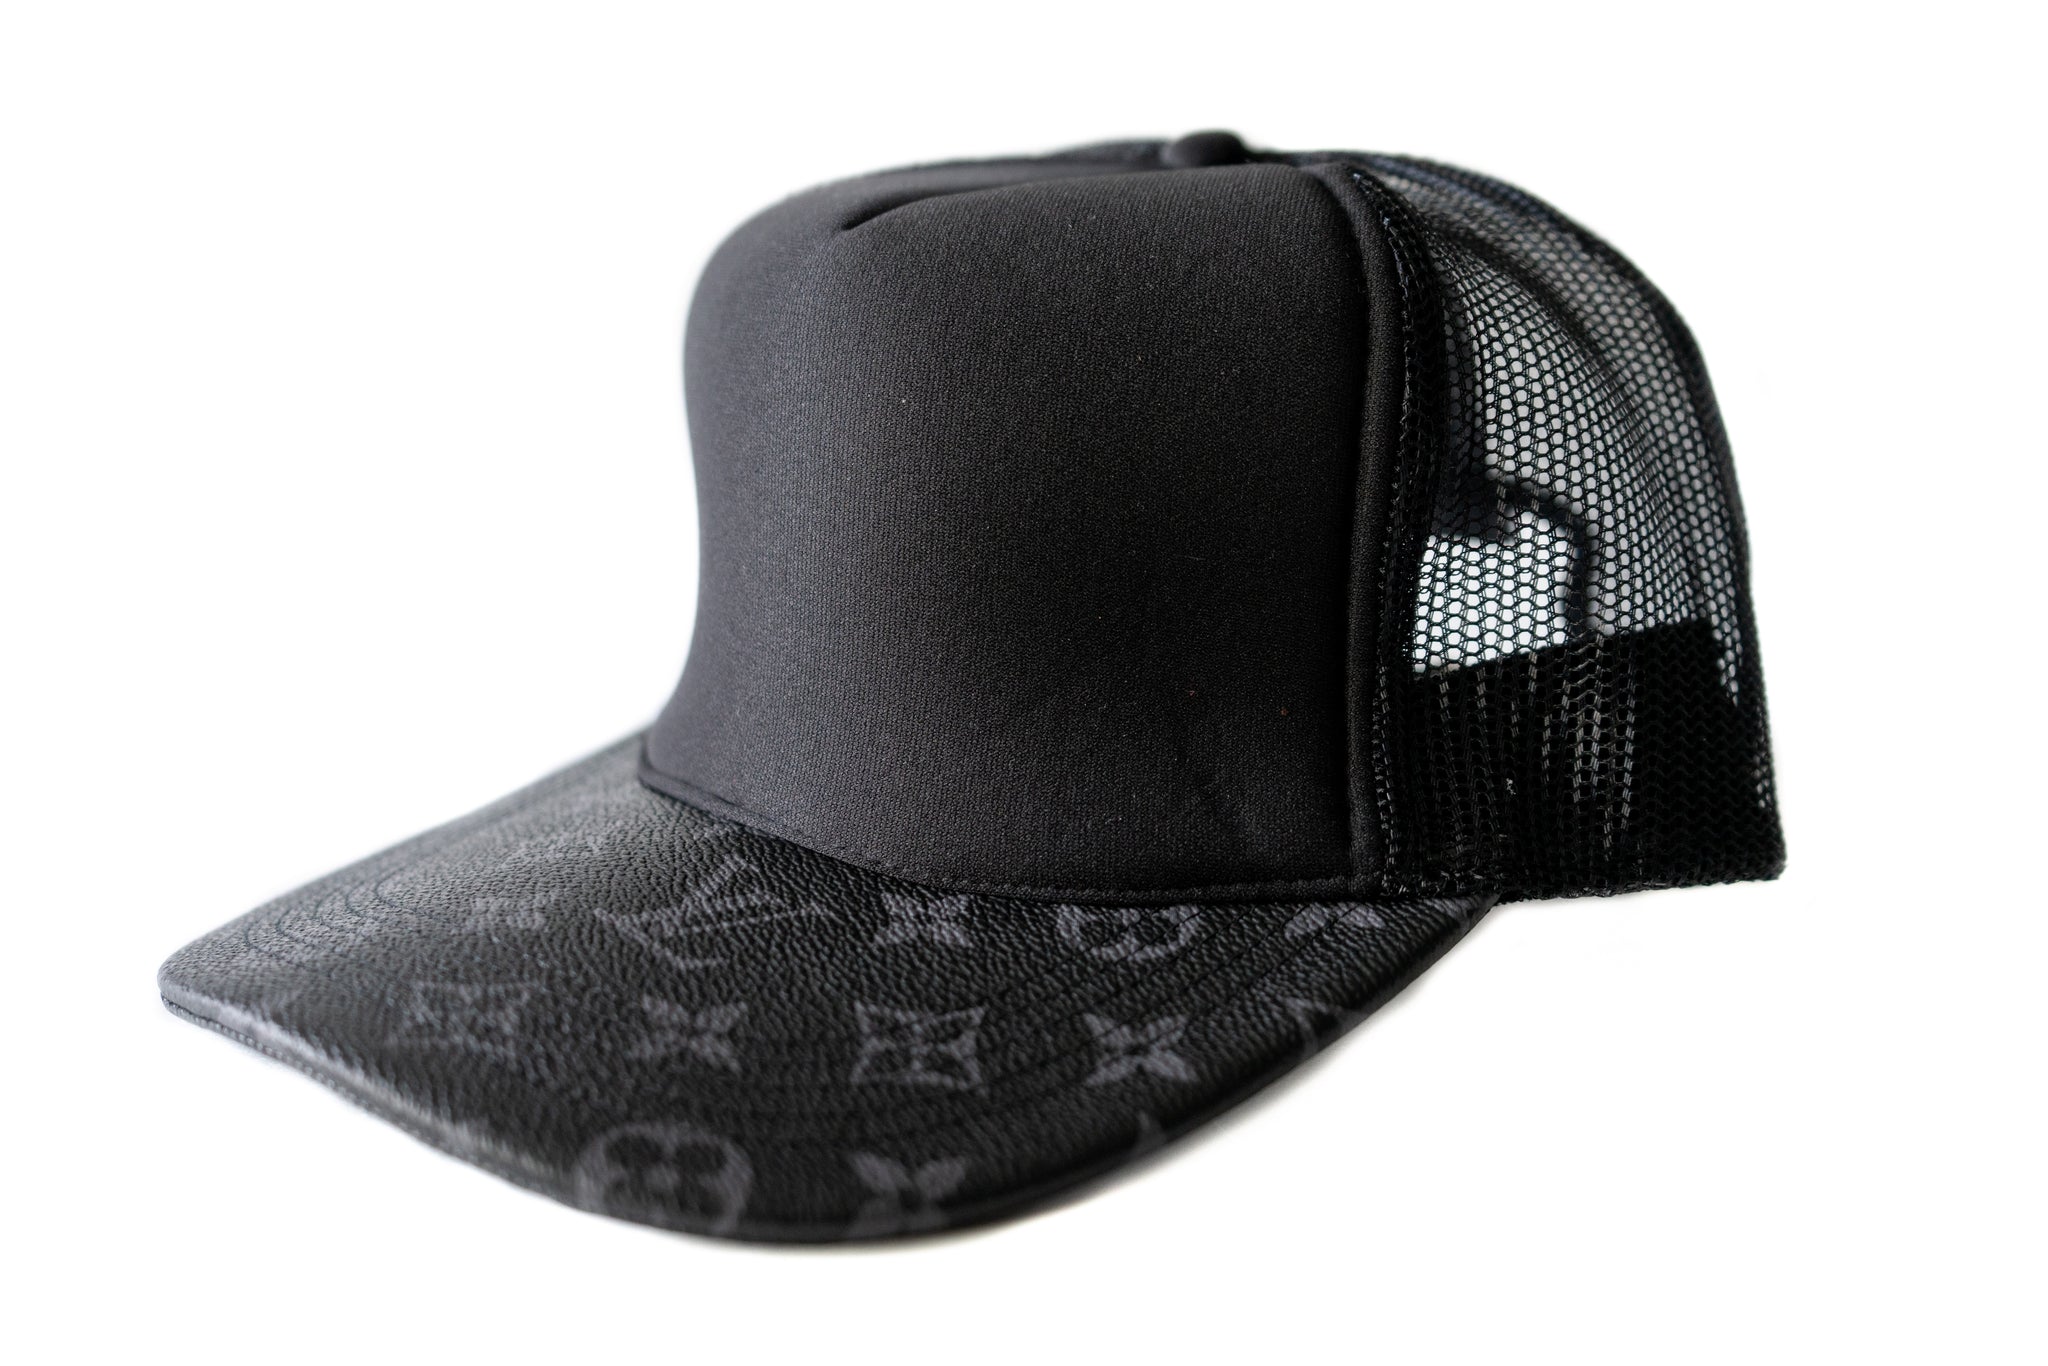 Louis Vuitton, Accessories, Black Mesh Louis Vuitton Monogram Hat